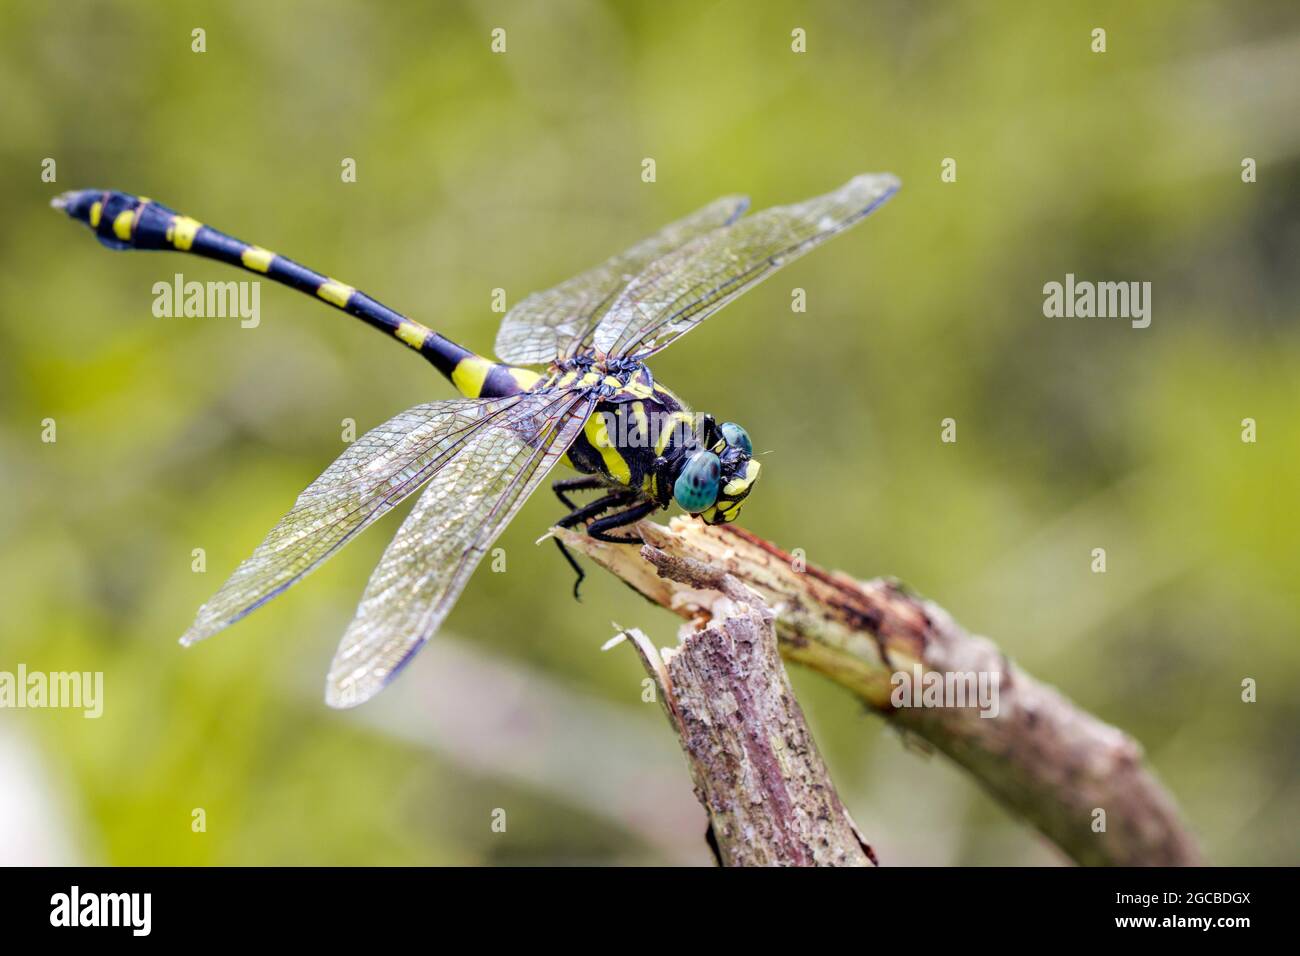 Immagine di gomphidae libellula (Ictinogomphus Decoratus) su rami secchi. Insetto. Animale Foto Stock